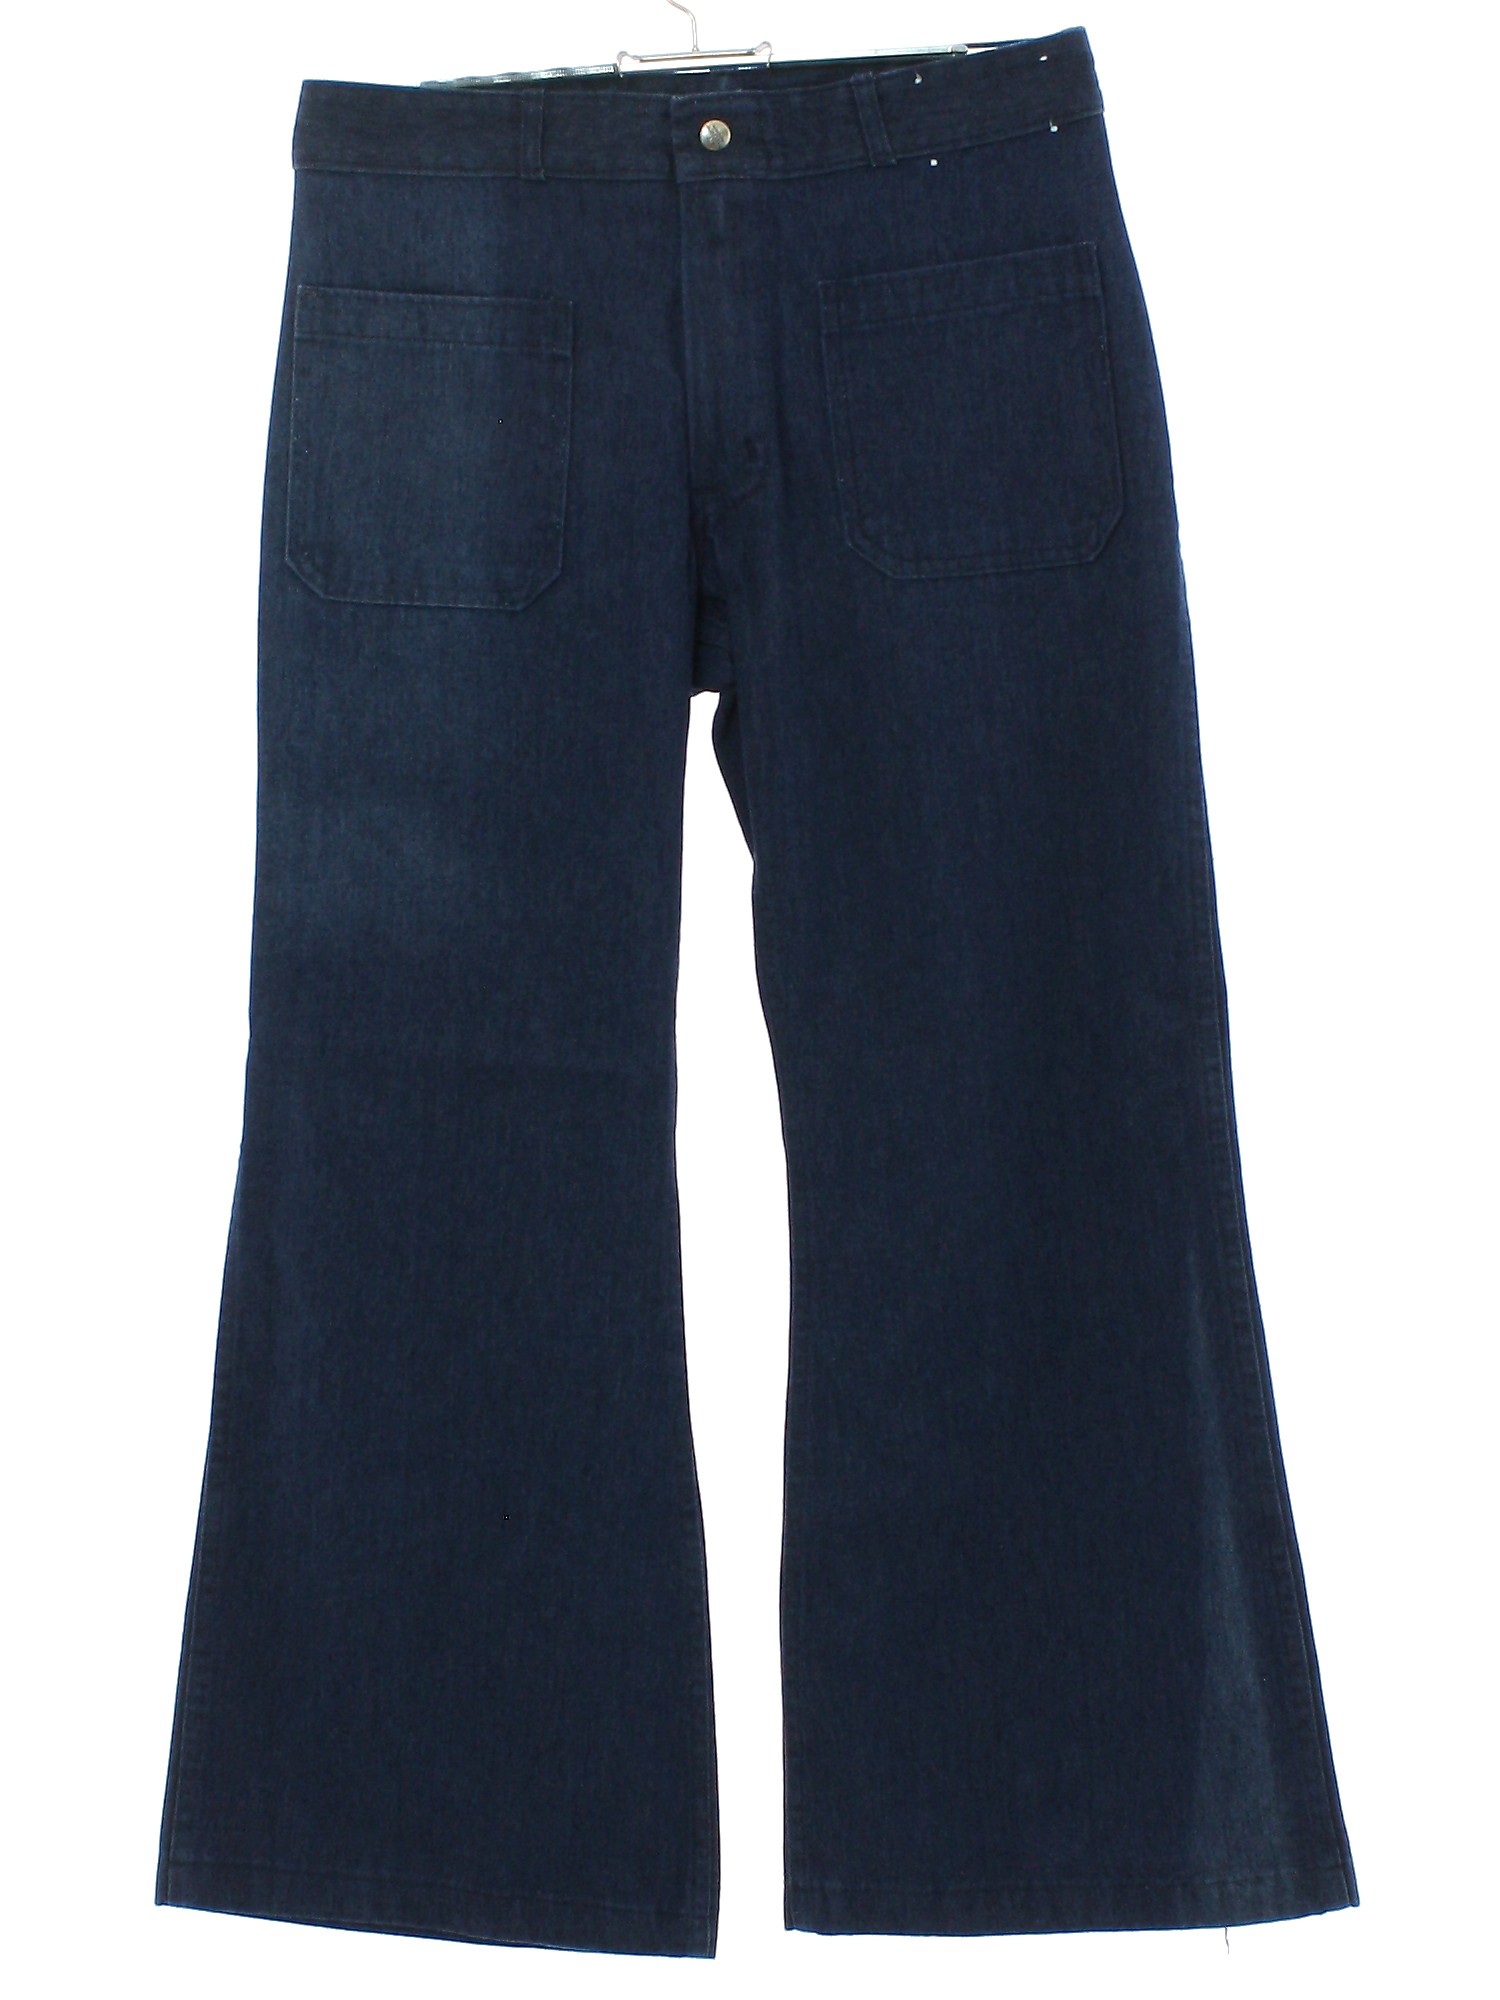 Vintage Seafarer 70's Bellbottom Pants: 70s style -Seafarer- Mens blue ...